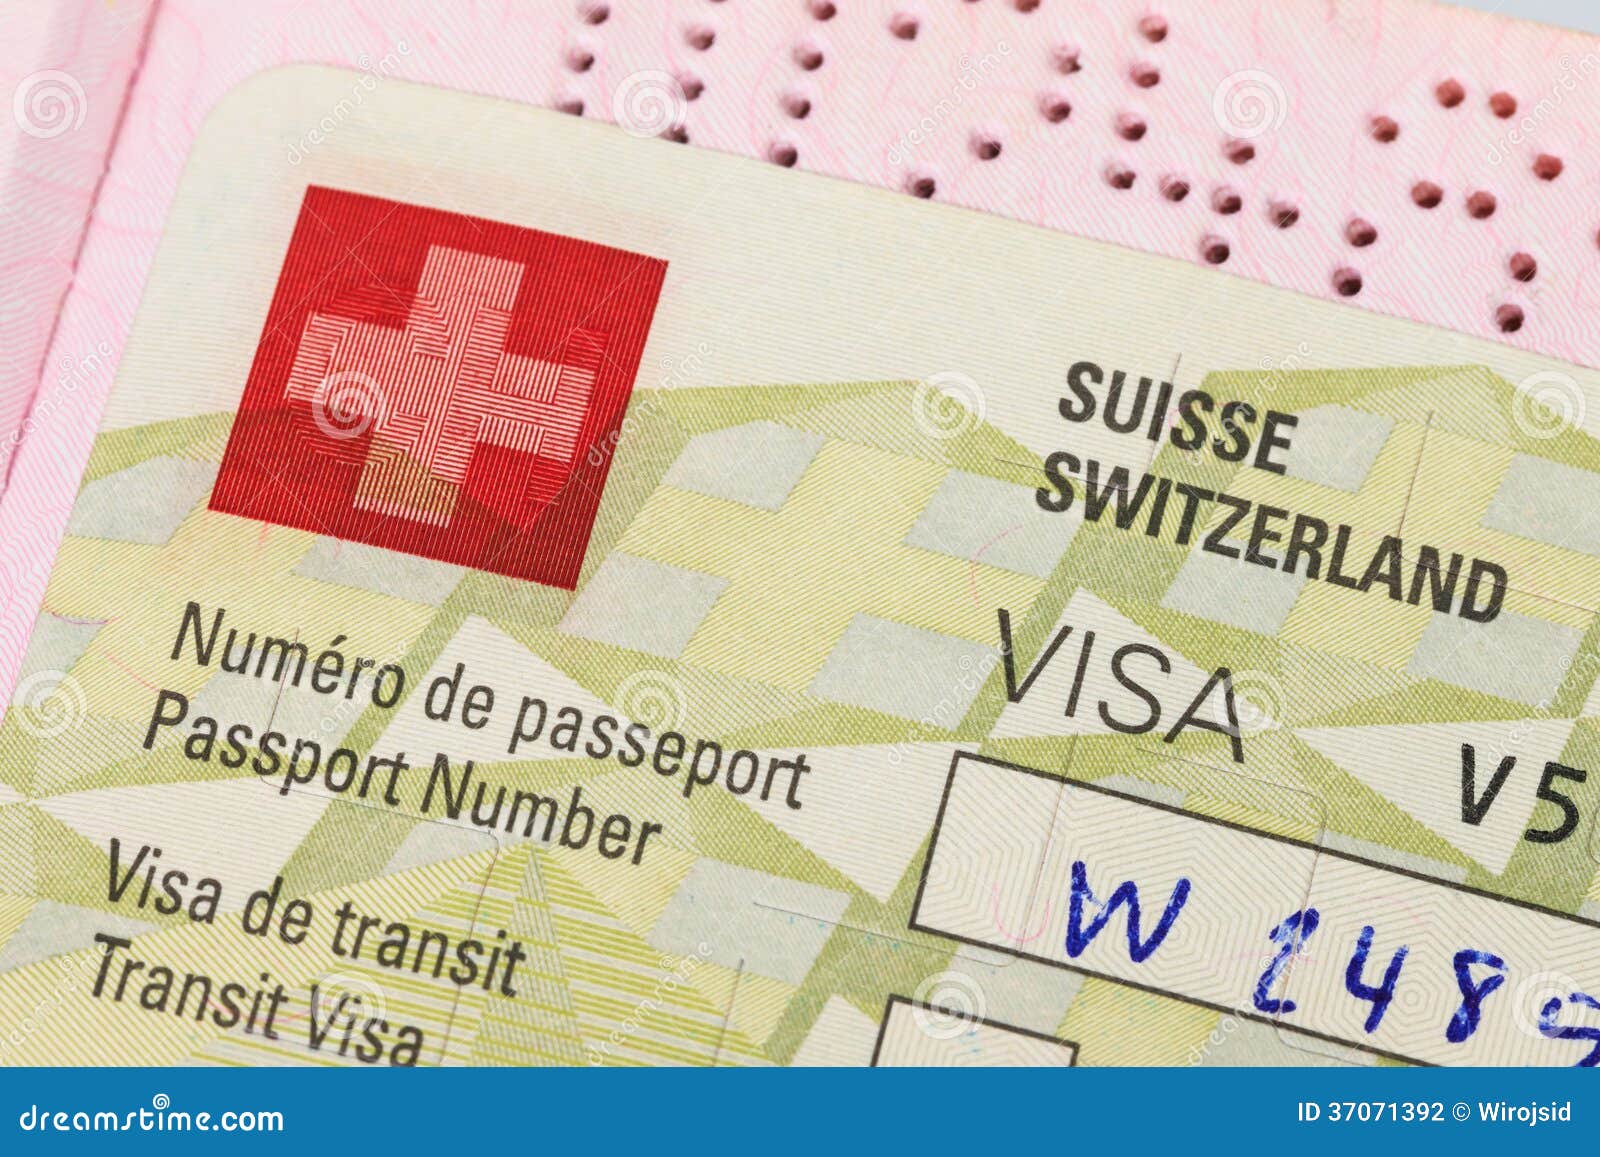 passports suisse anti aging demológia anti aging megoldás